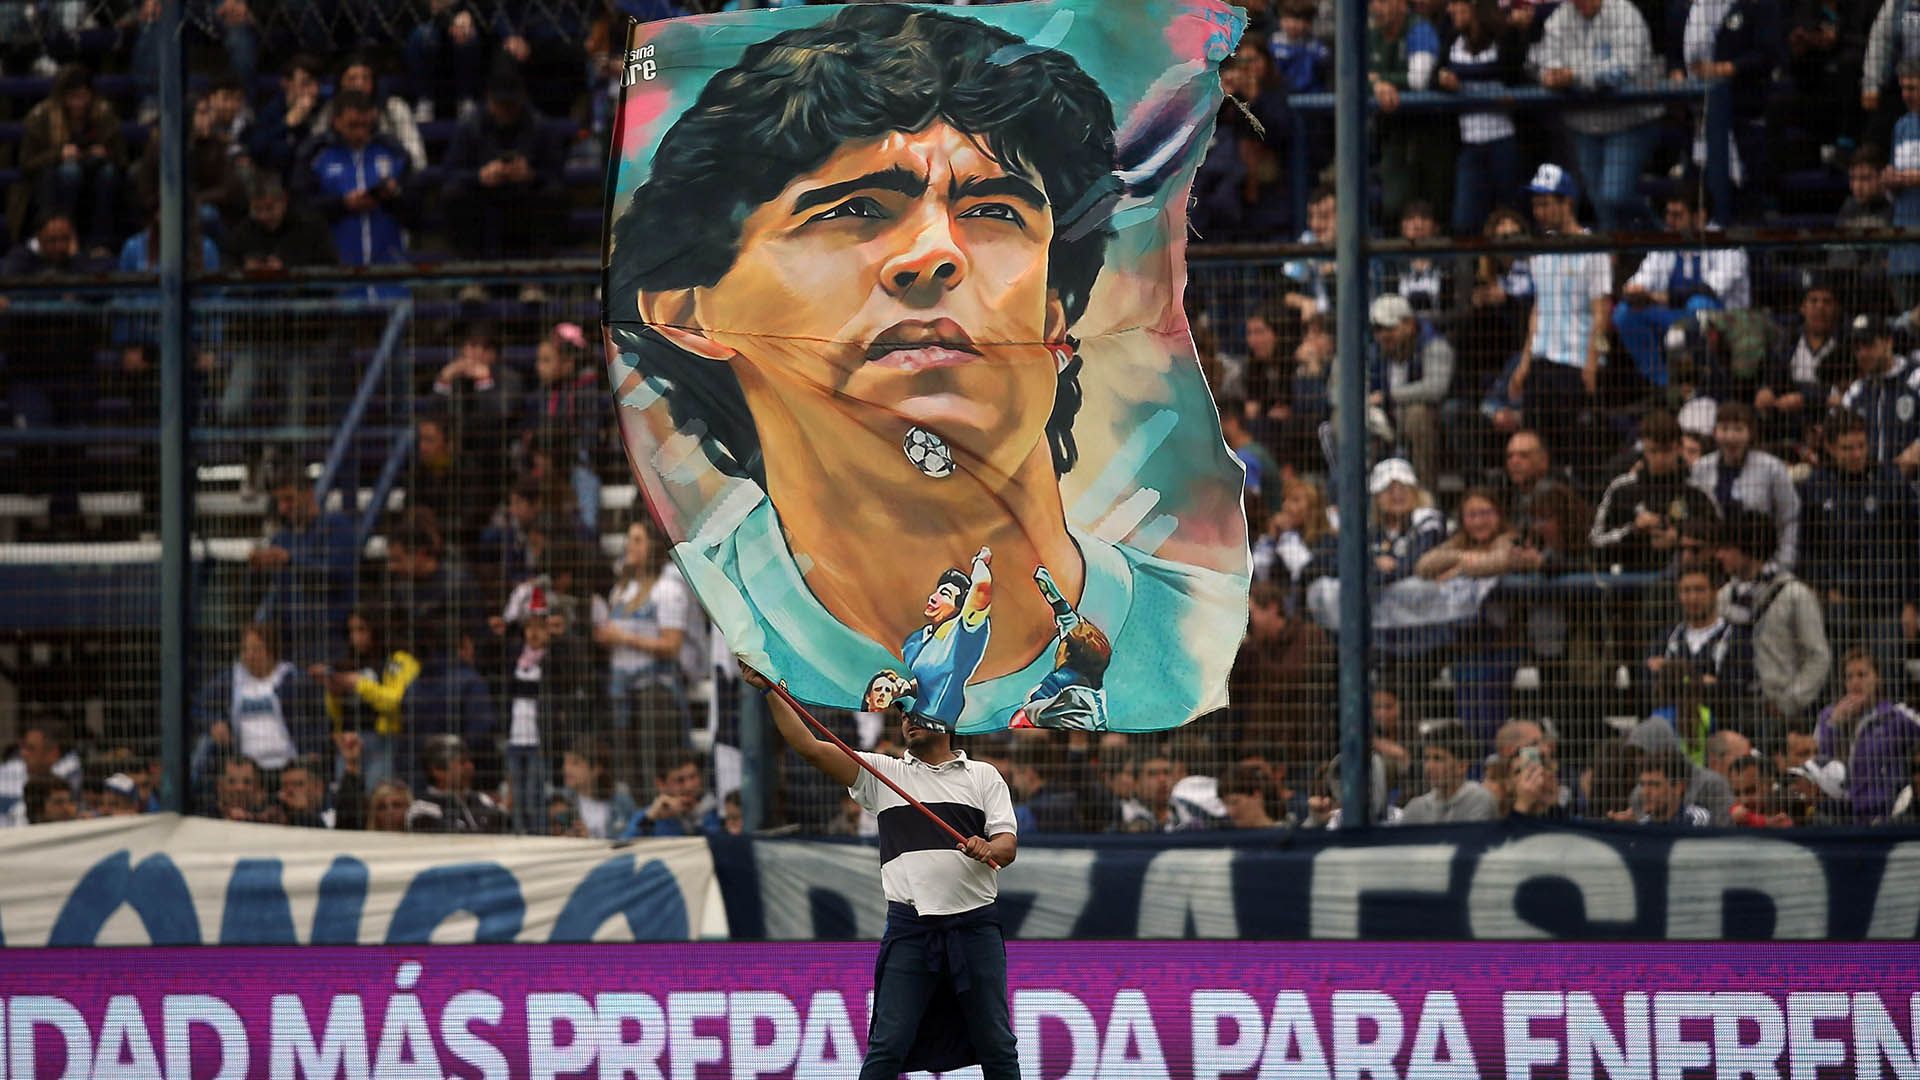 La bandera de Maradona el día de su presentación (Foto: Agustín Marcarian / Reuters)